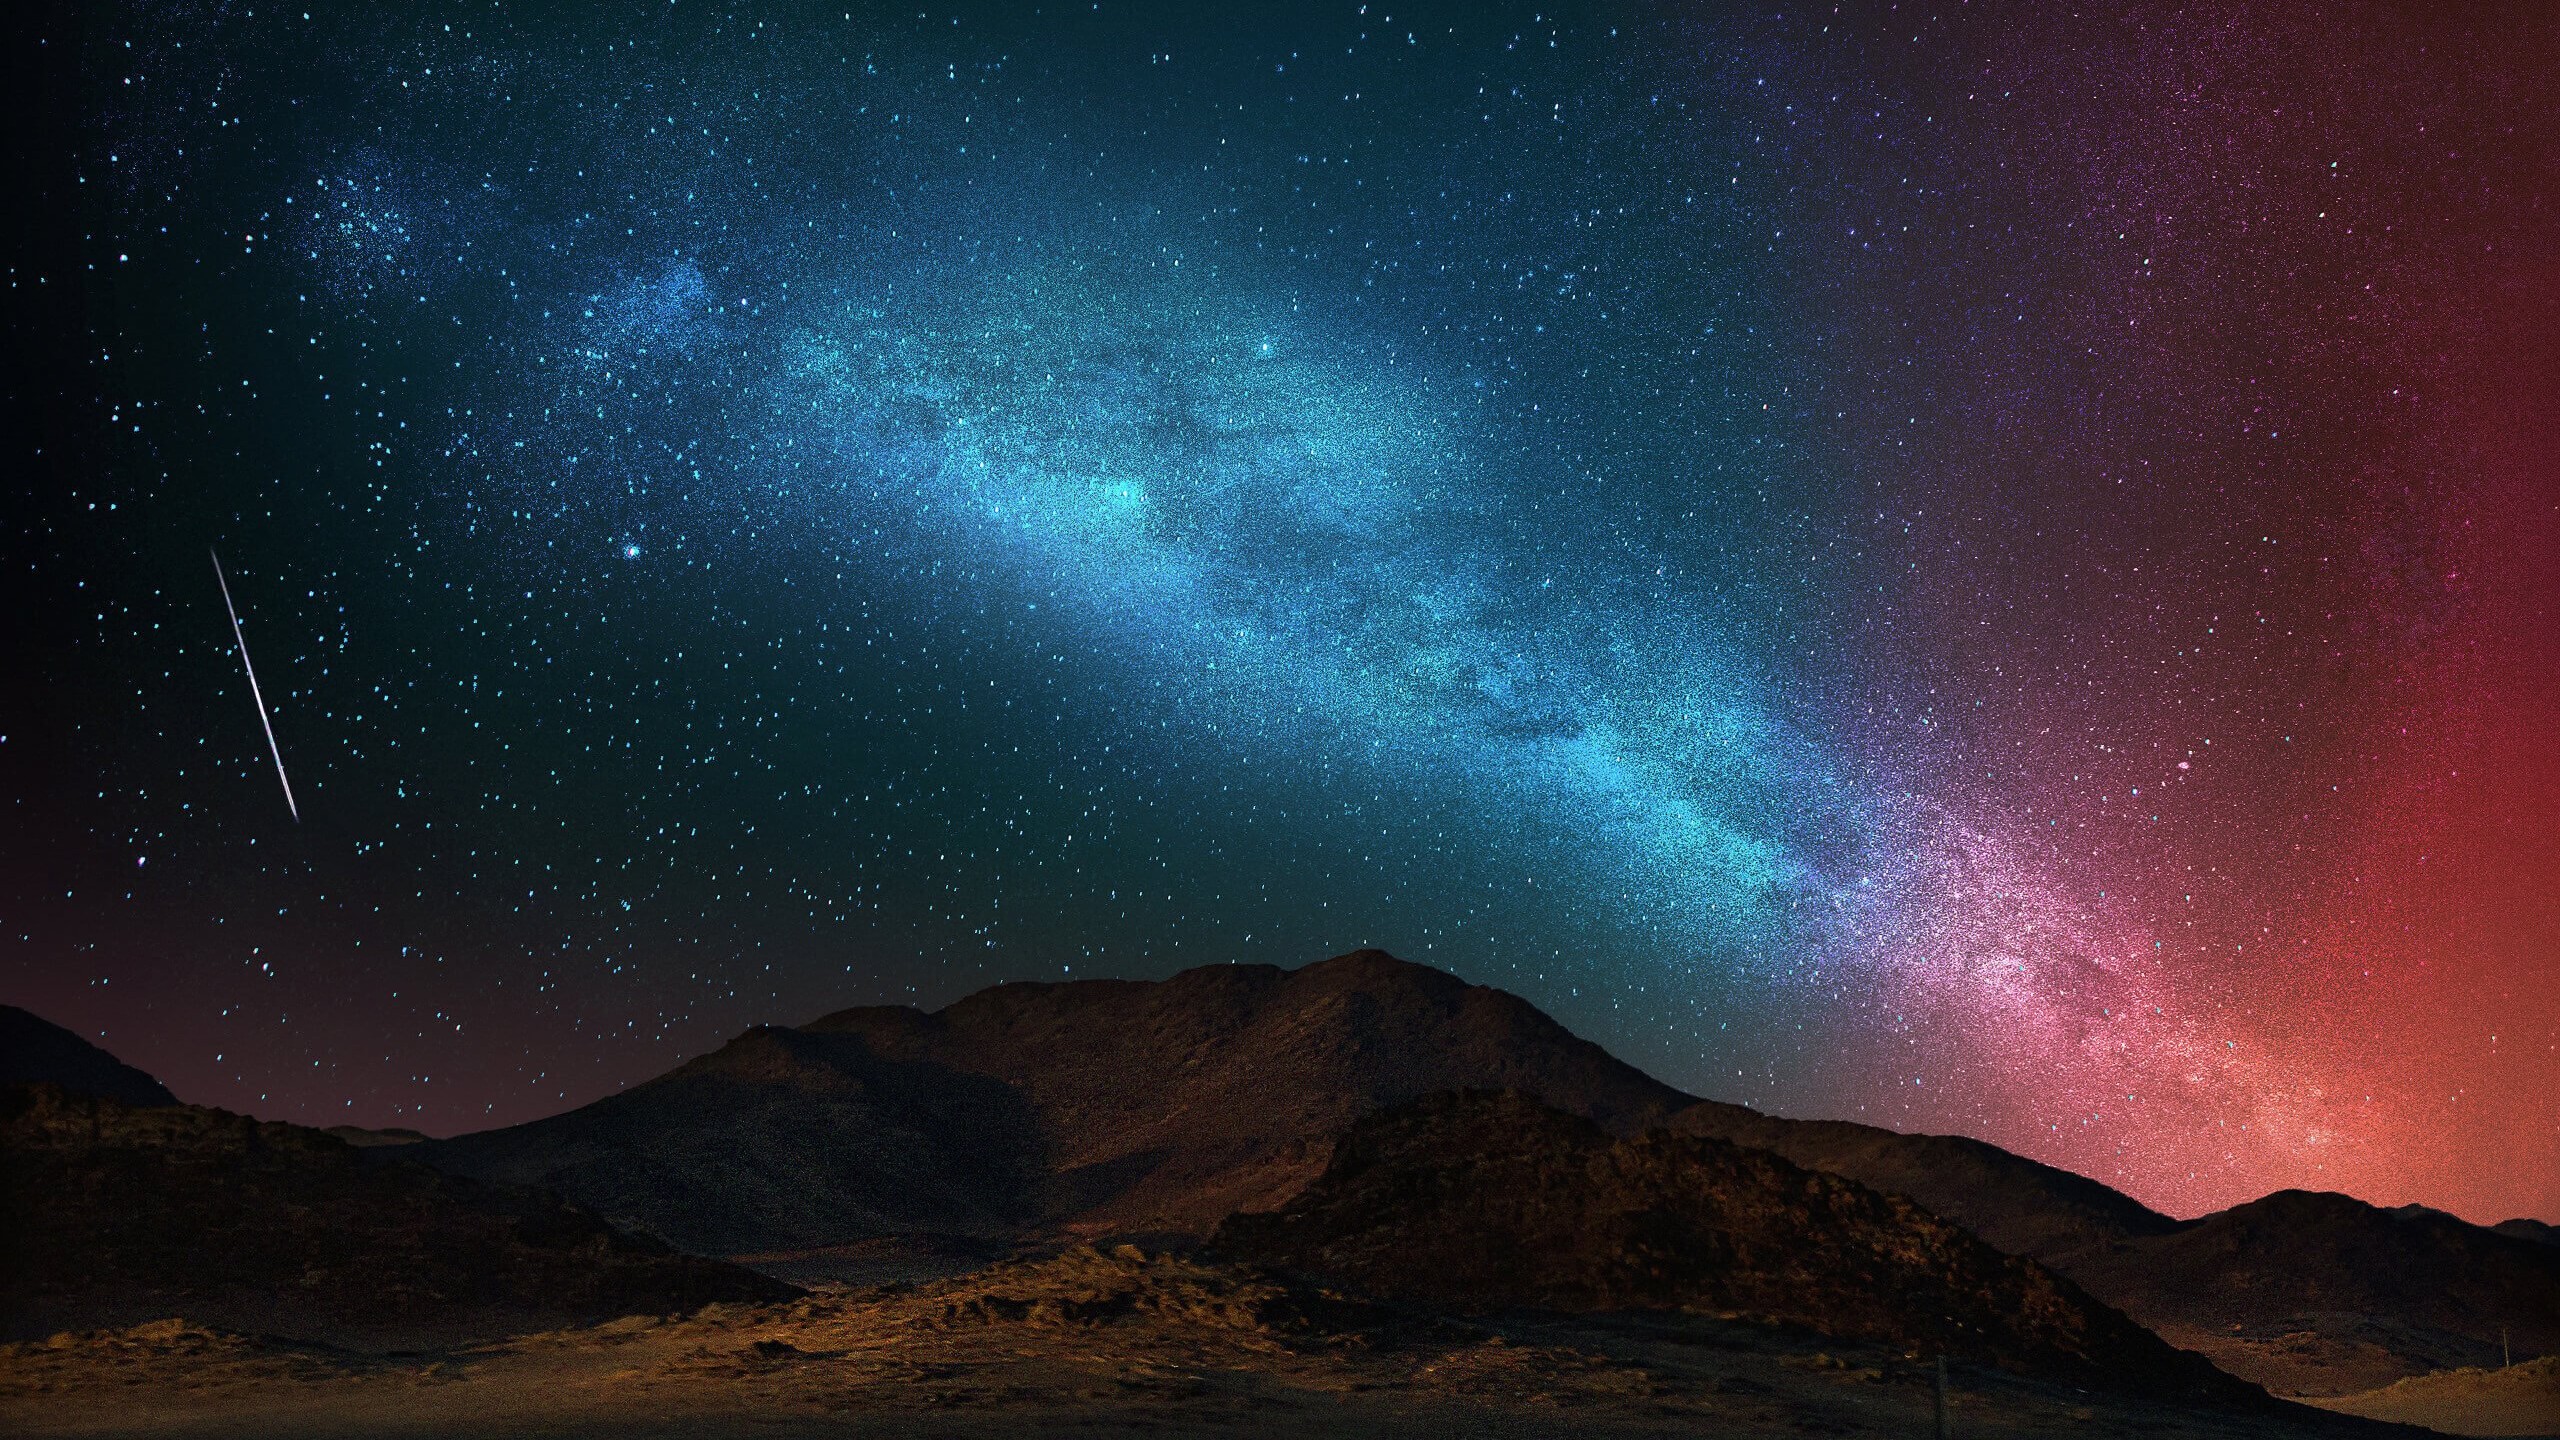 Starry Night Over The Desert Wallpaper for Desktop 2560x1440